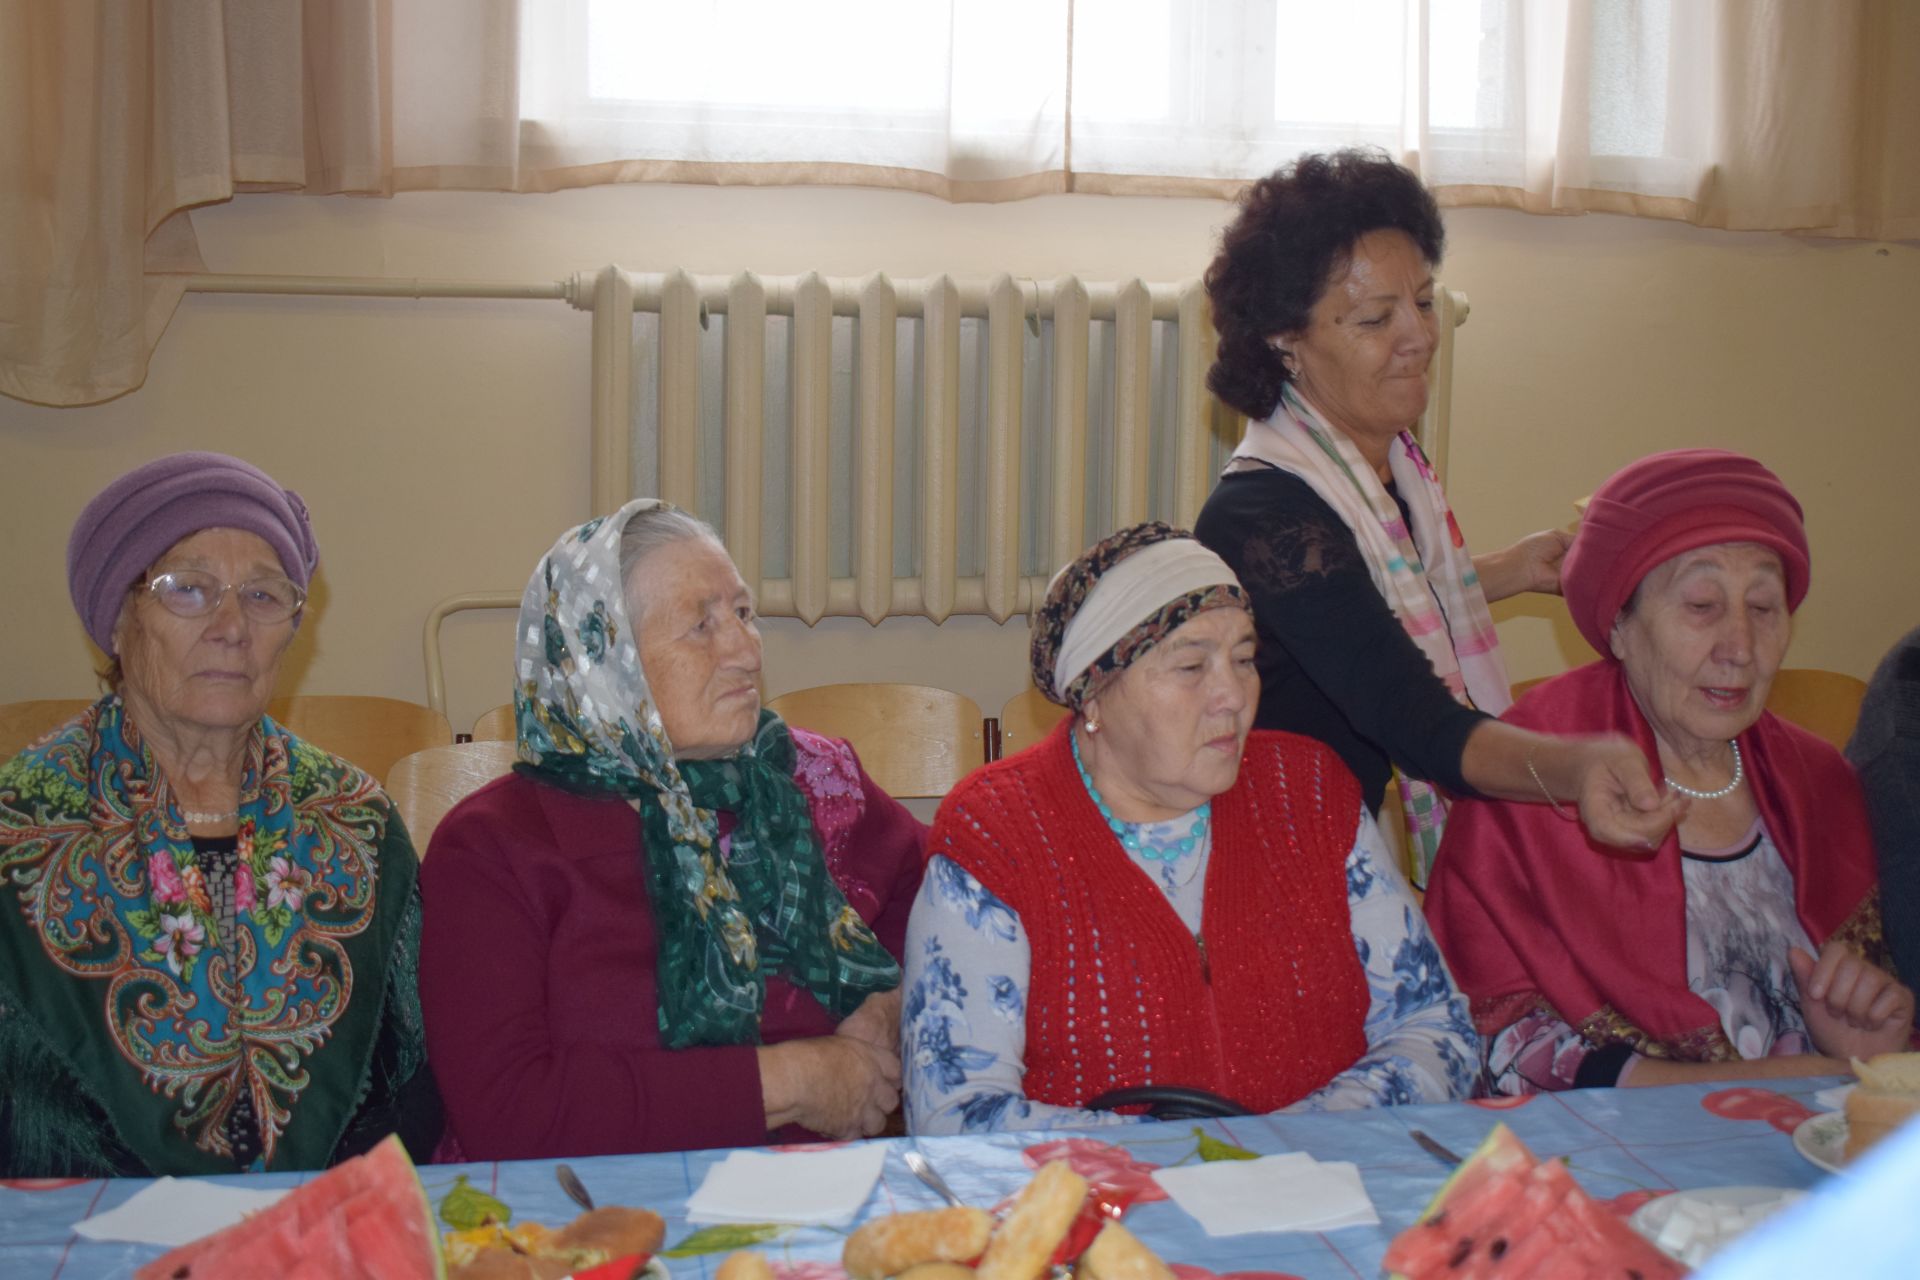 Территориальное общественное самоуправление №13 Азнакаево пригласило на праздник представителей старшего поколения